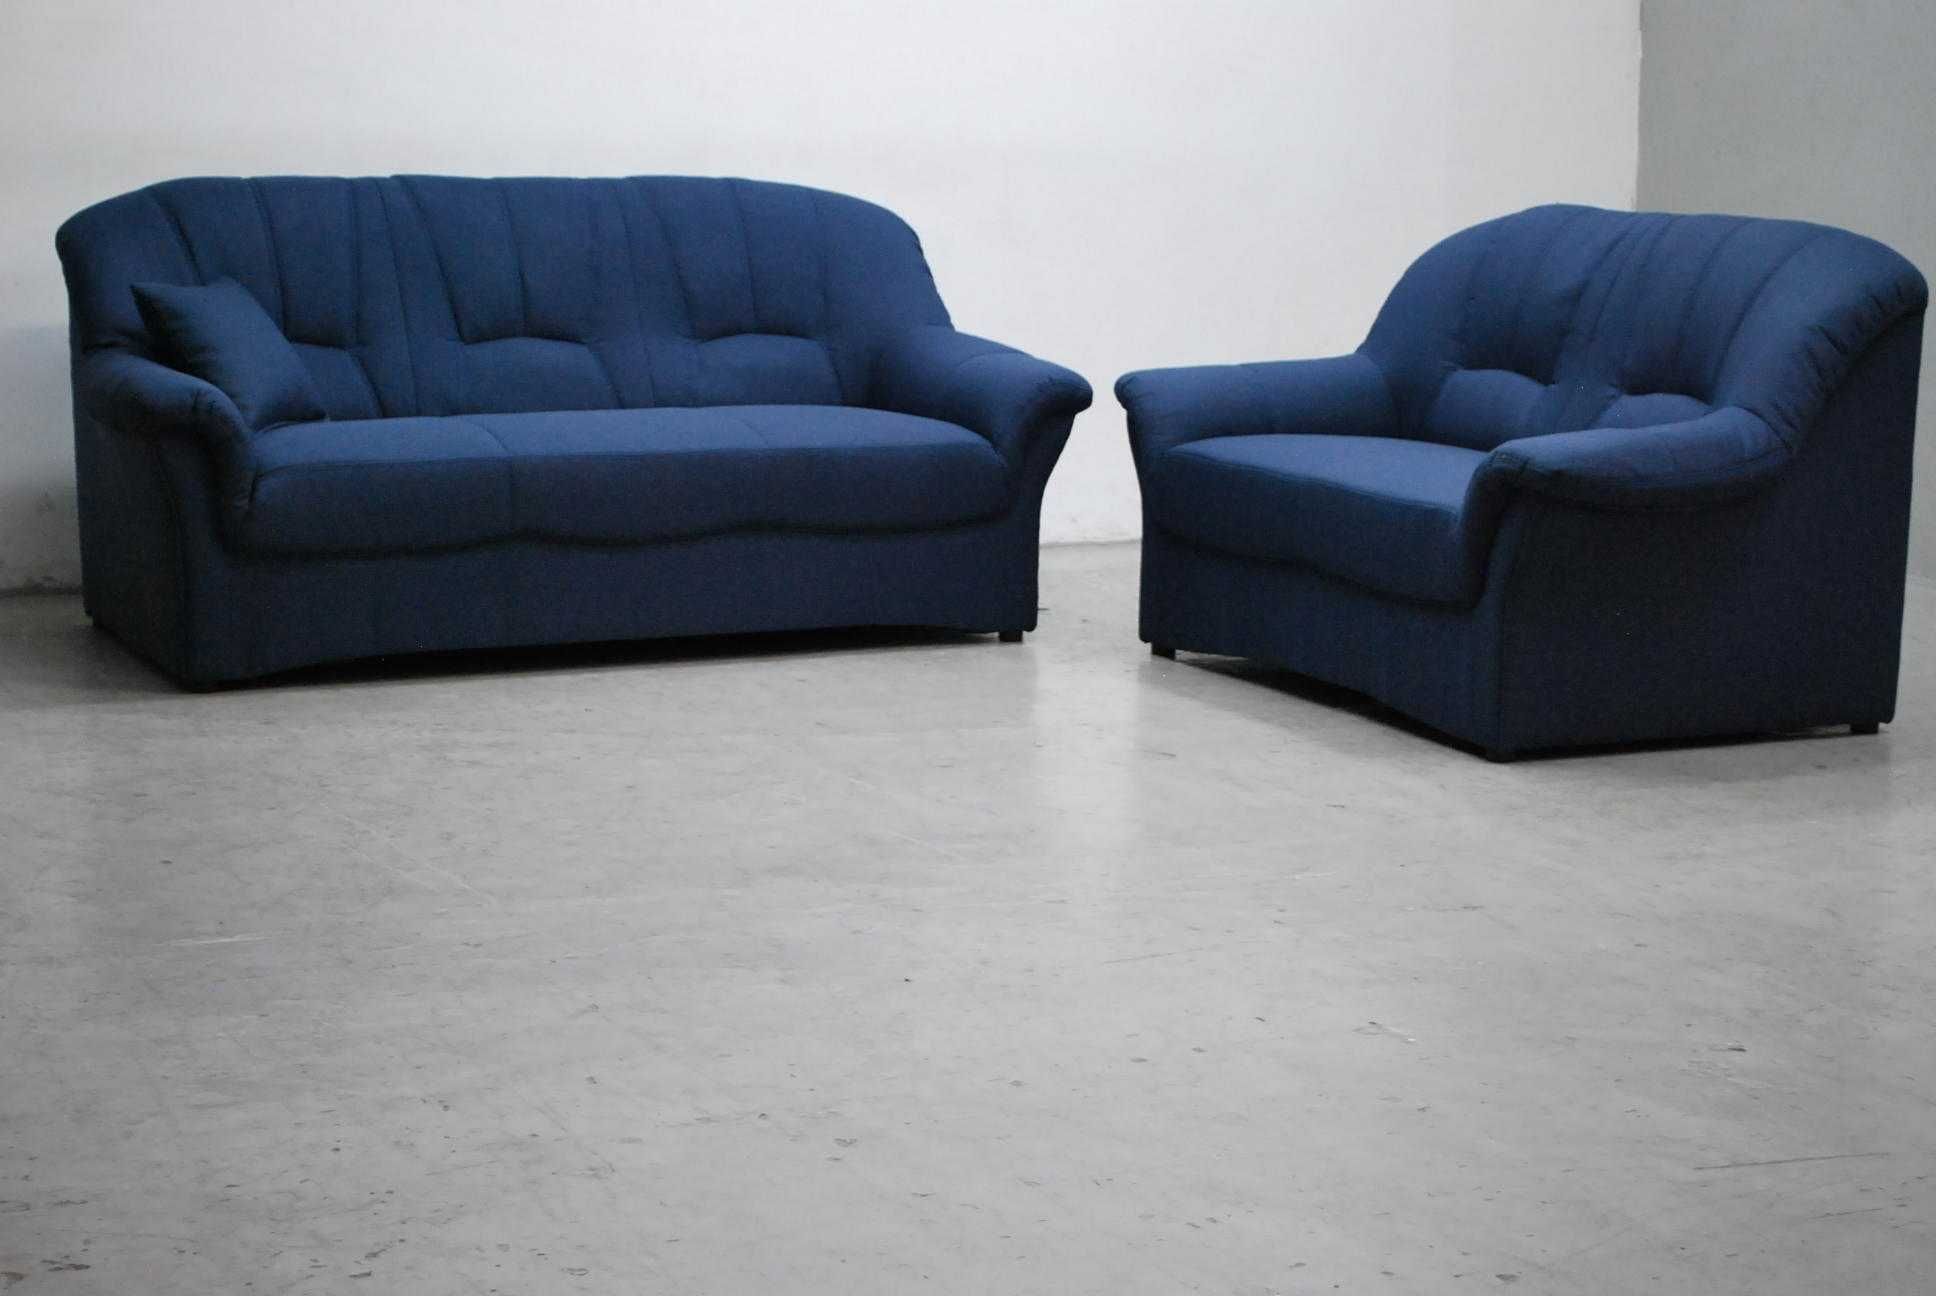 RNL nowy komplet 3+2 sofa, kanapa, kanapy zestaw